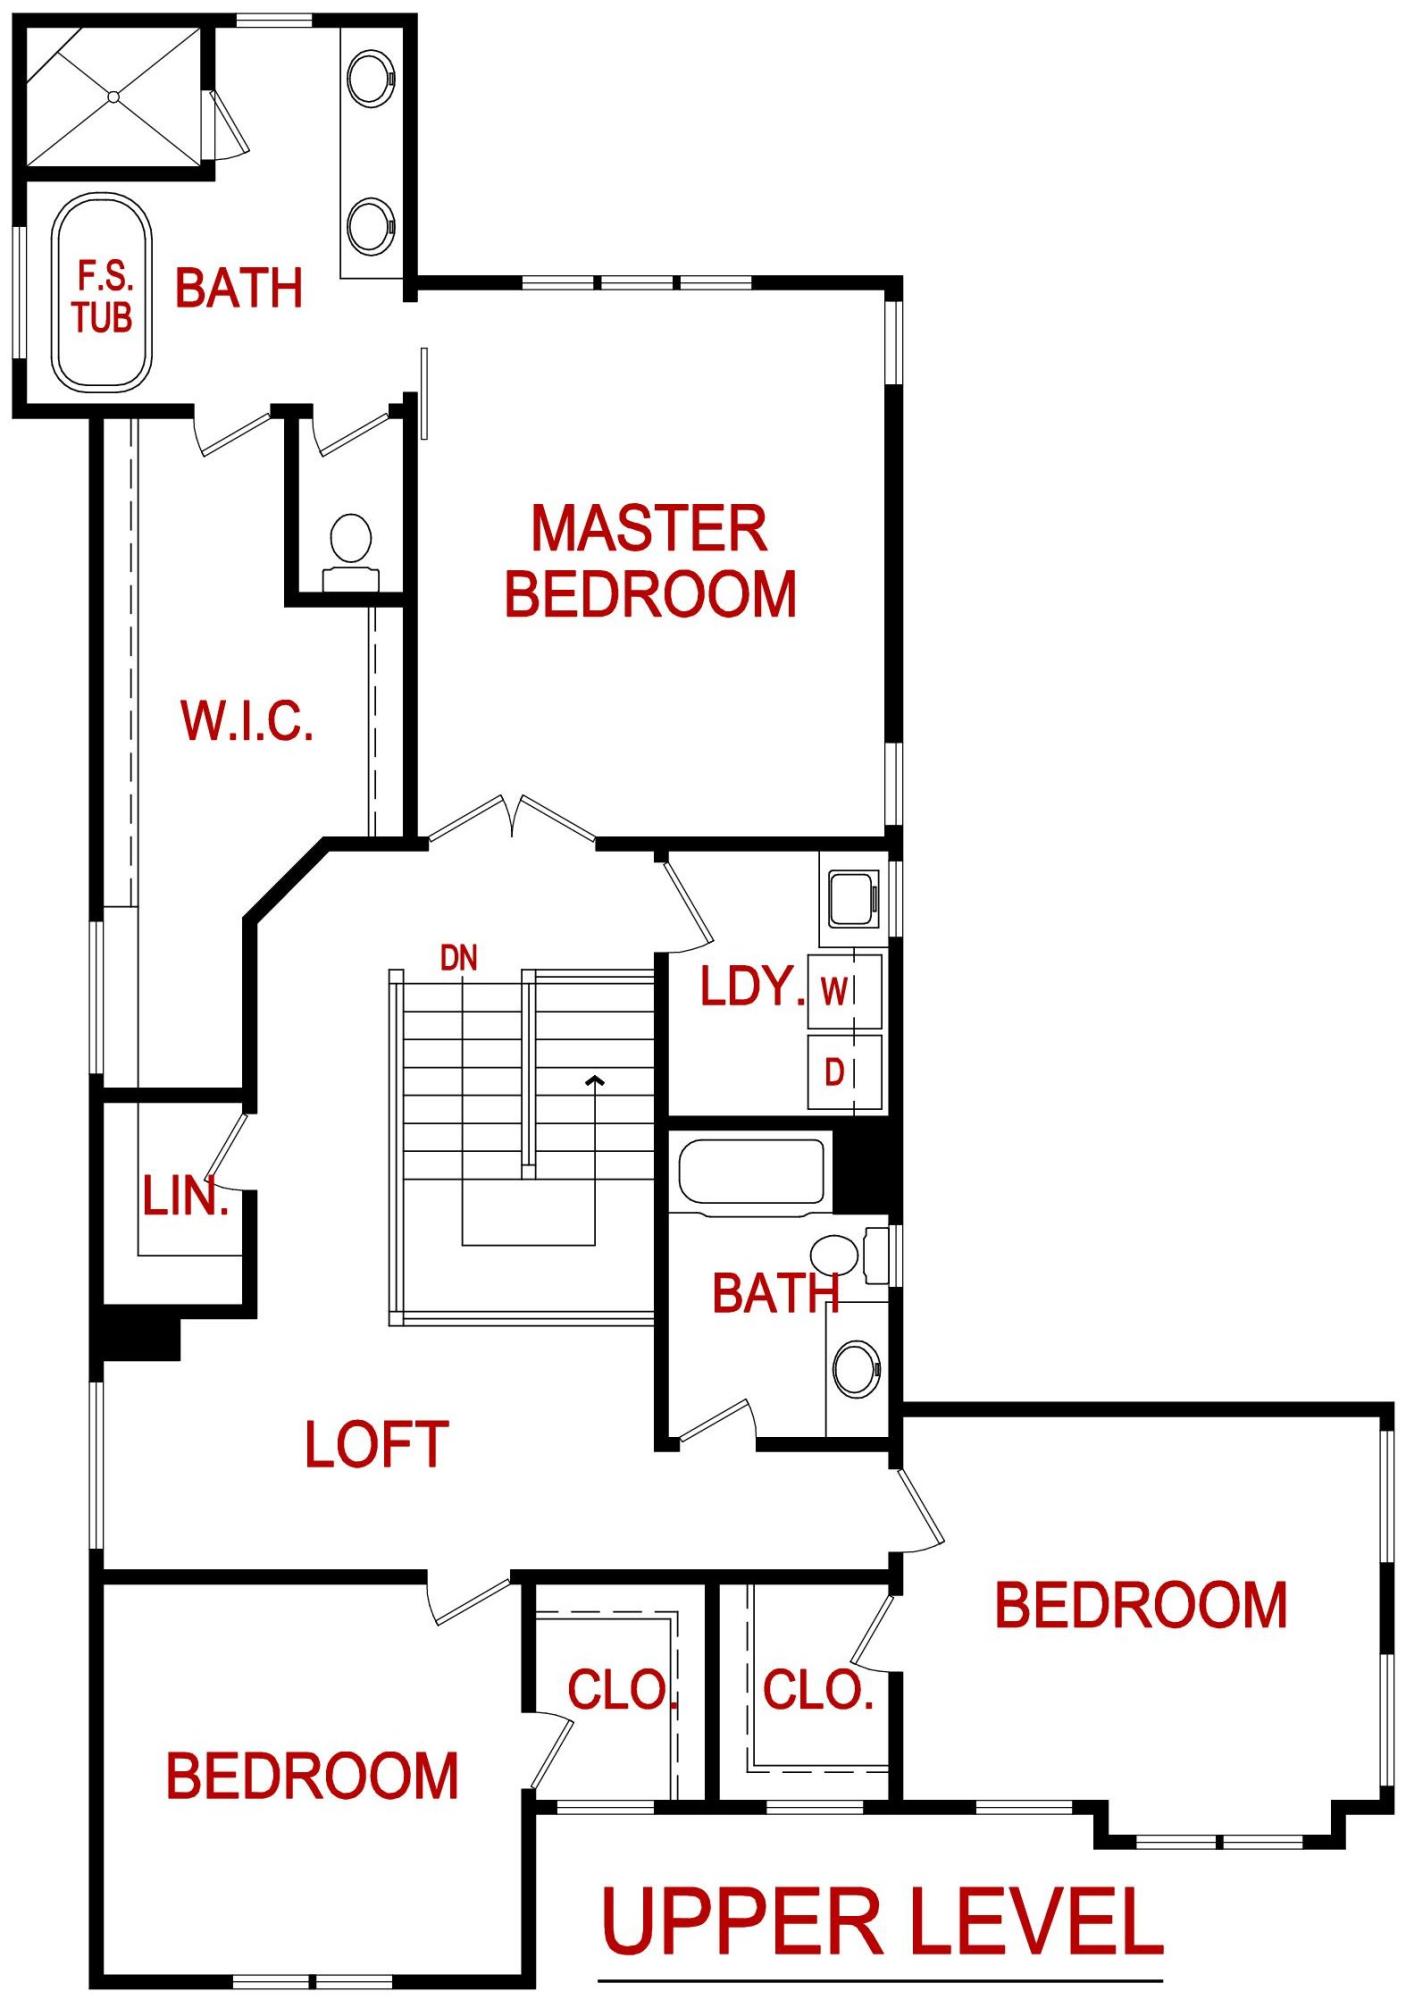 Upper level floor plan for 7429 Ash St. Prairie Village, KS from Lambie custom homes